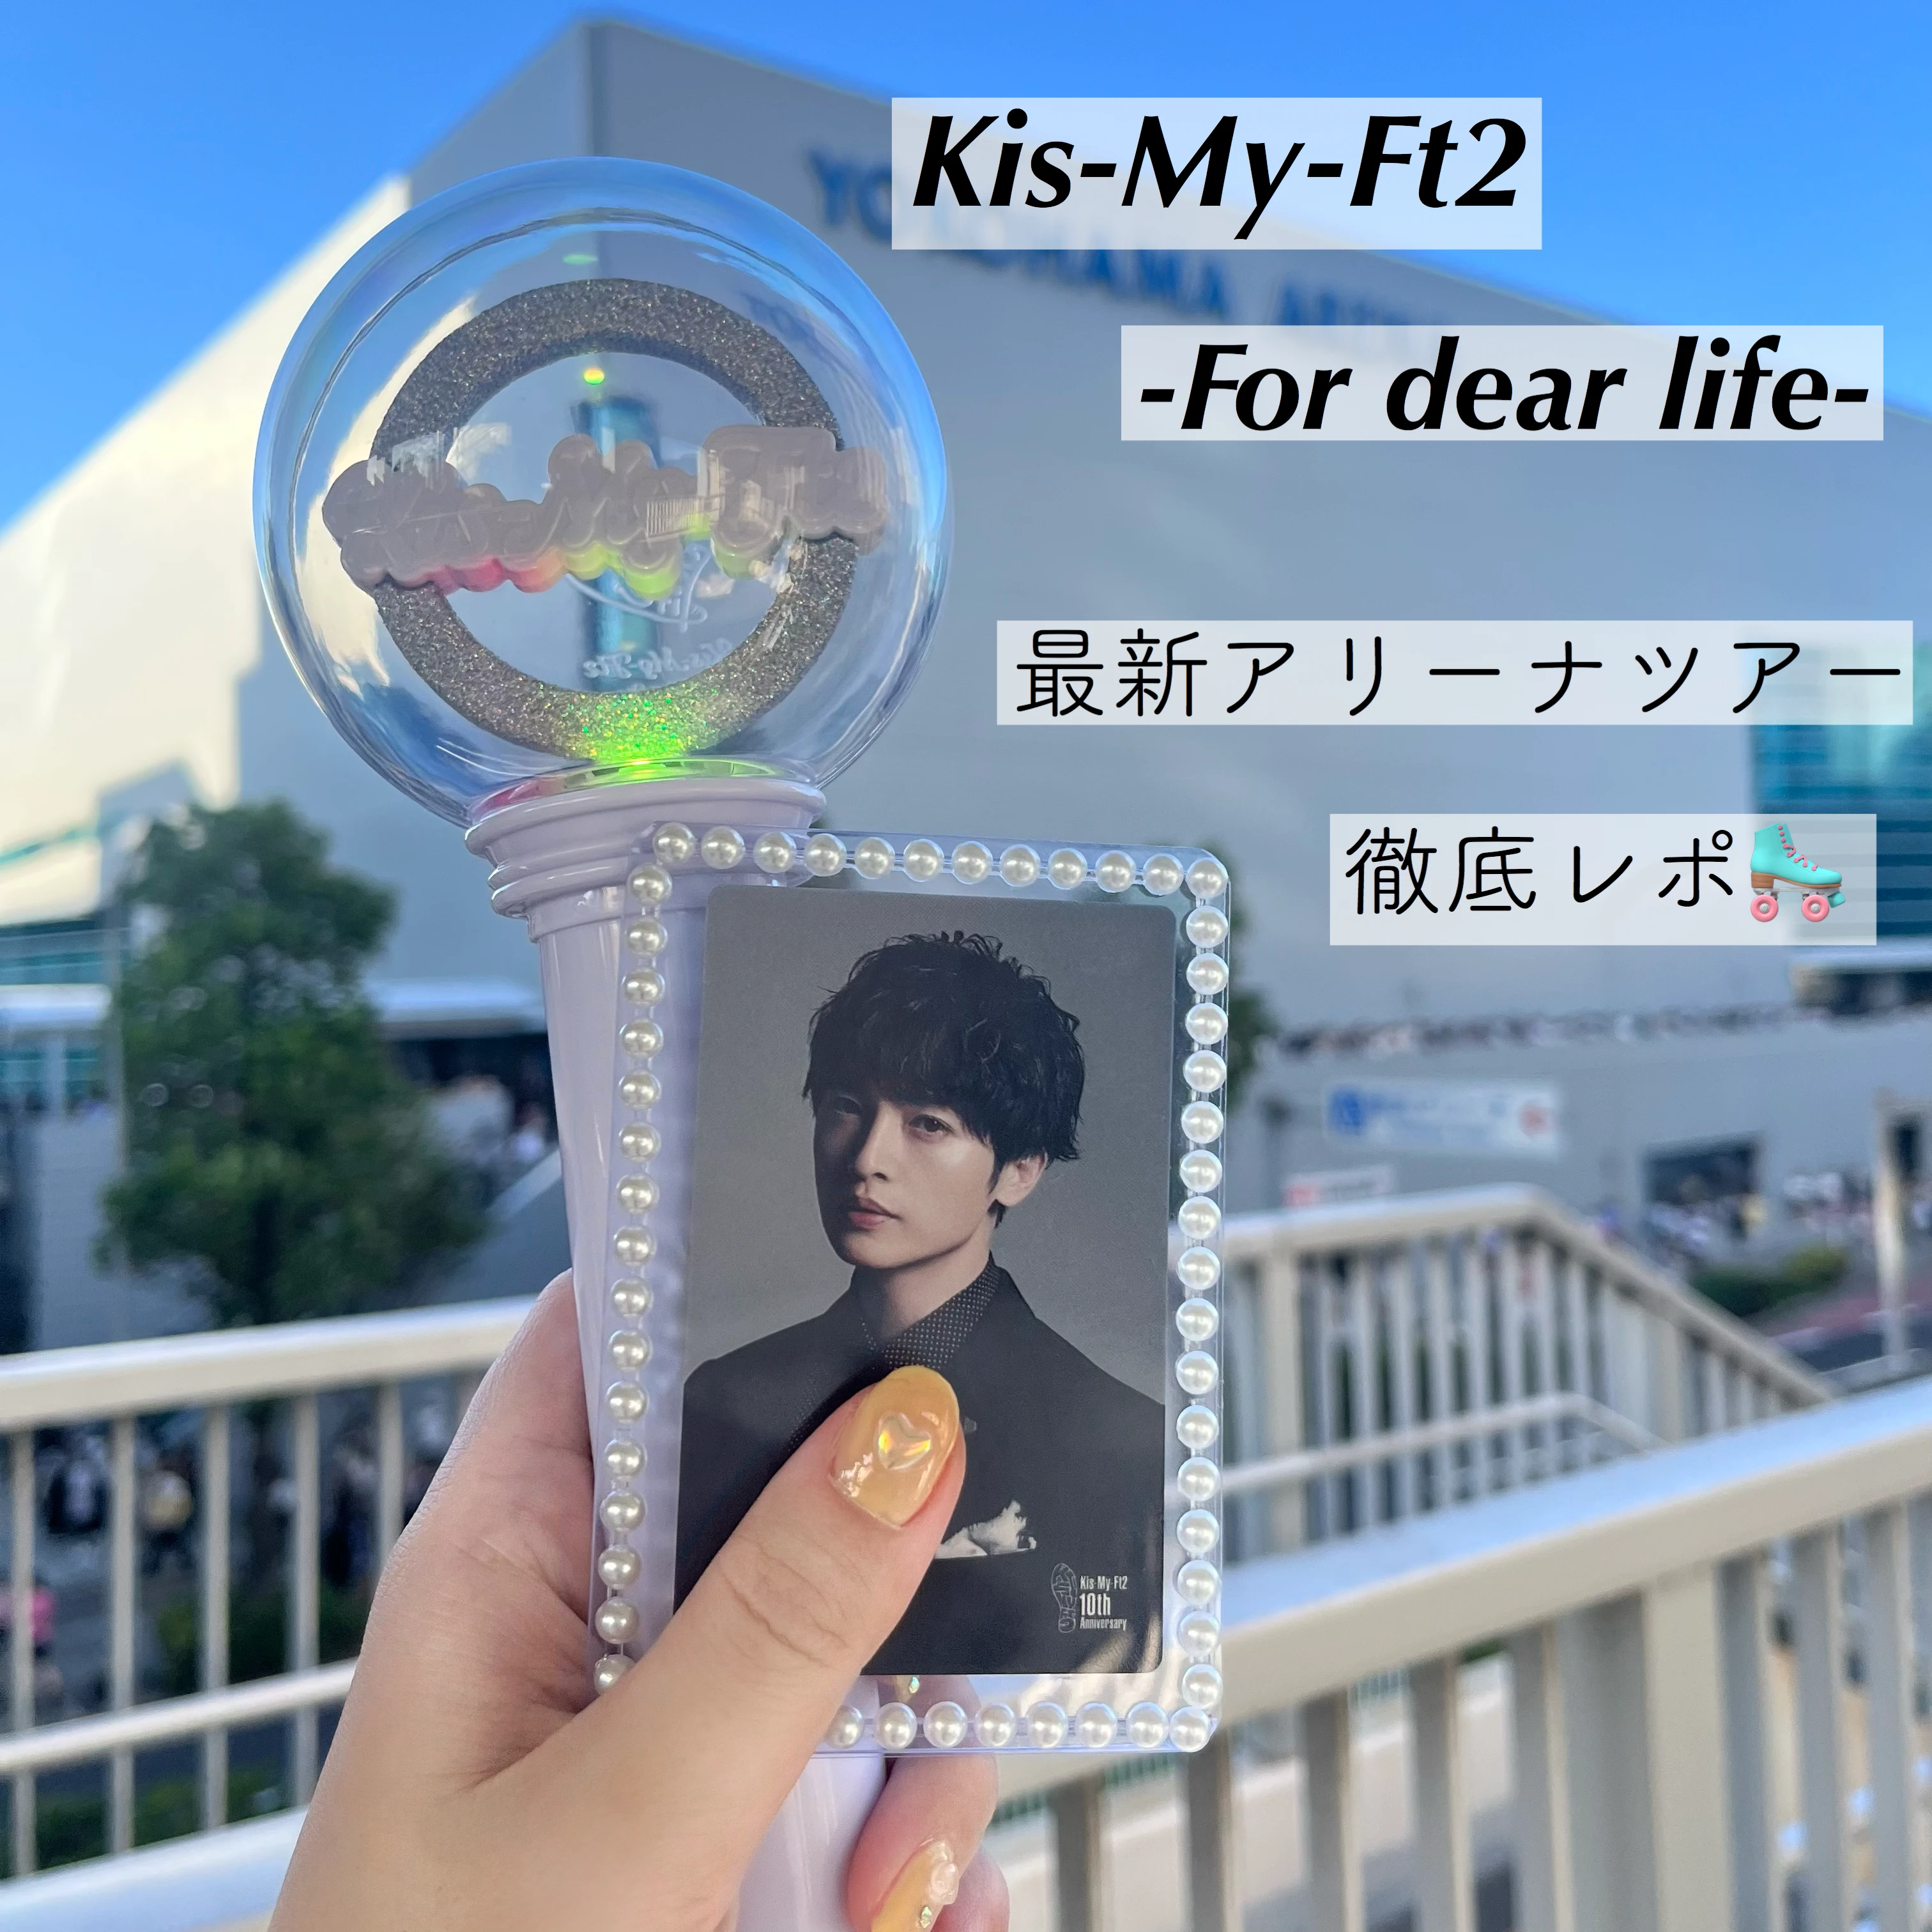 ネタバレなし】「Kis-My-Ft2 -For dear life-」横浜アリーナ公演を徹底